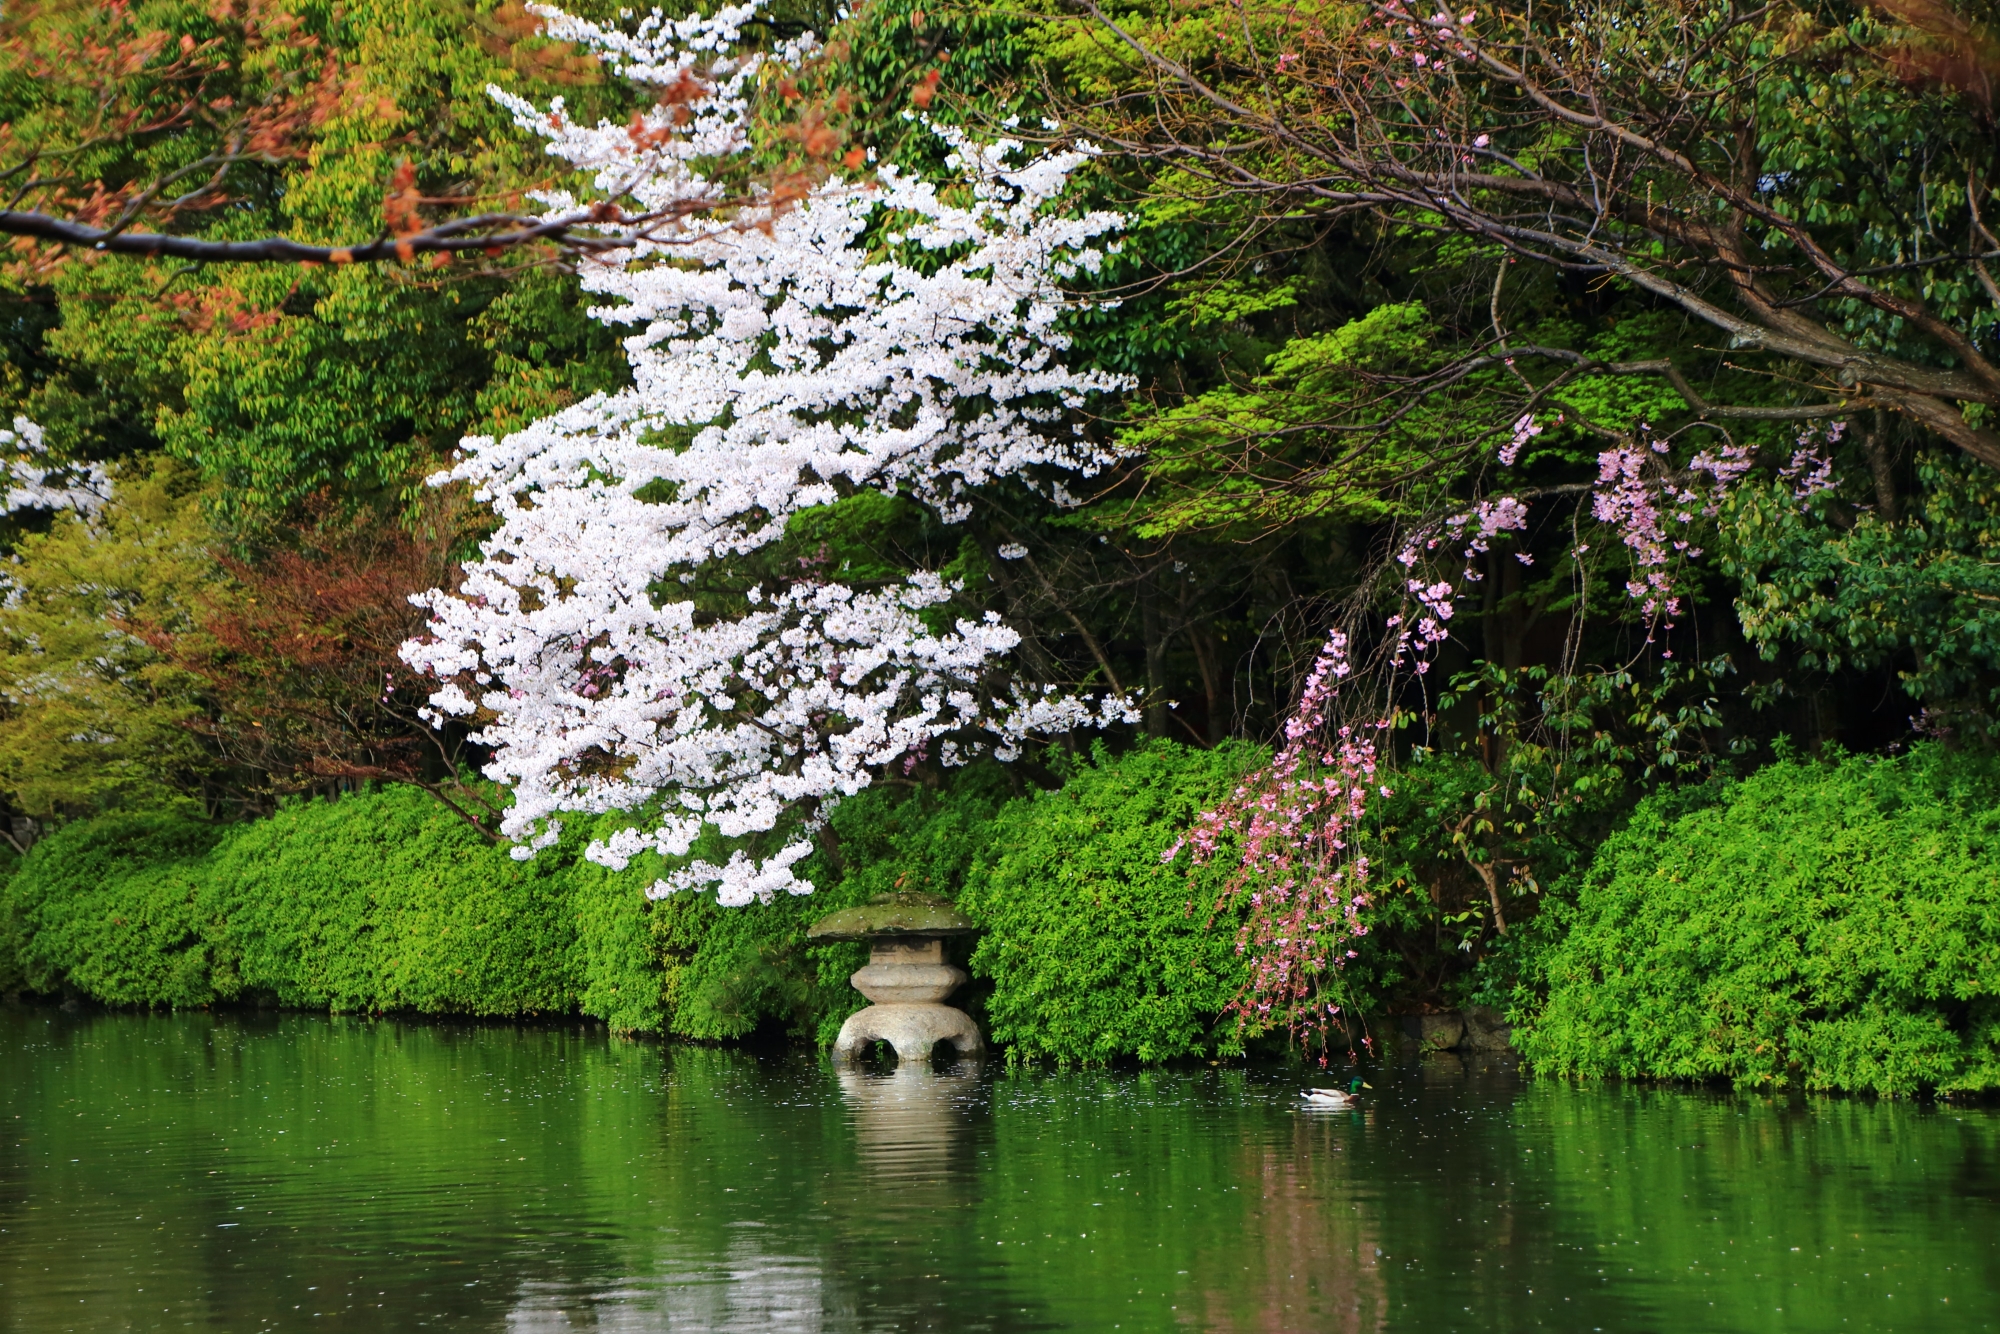 法成就池にある水面に浮かぶ燈籠と桜